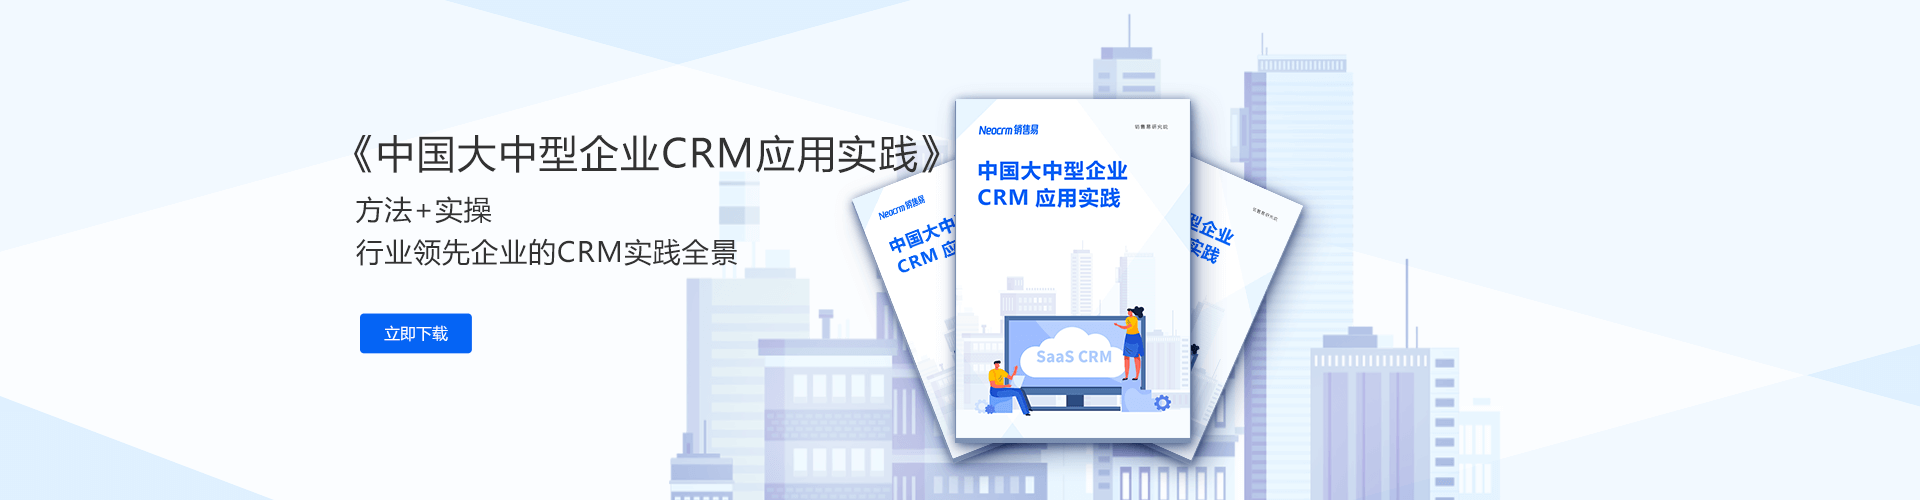 中国大中型企业CRM应用实践全景